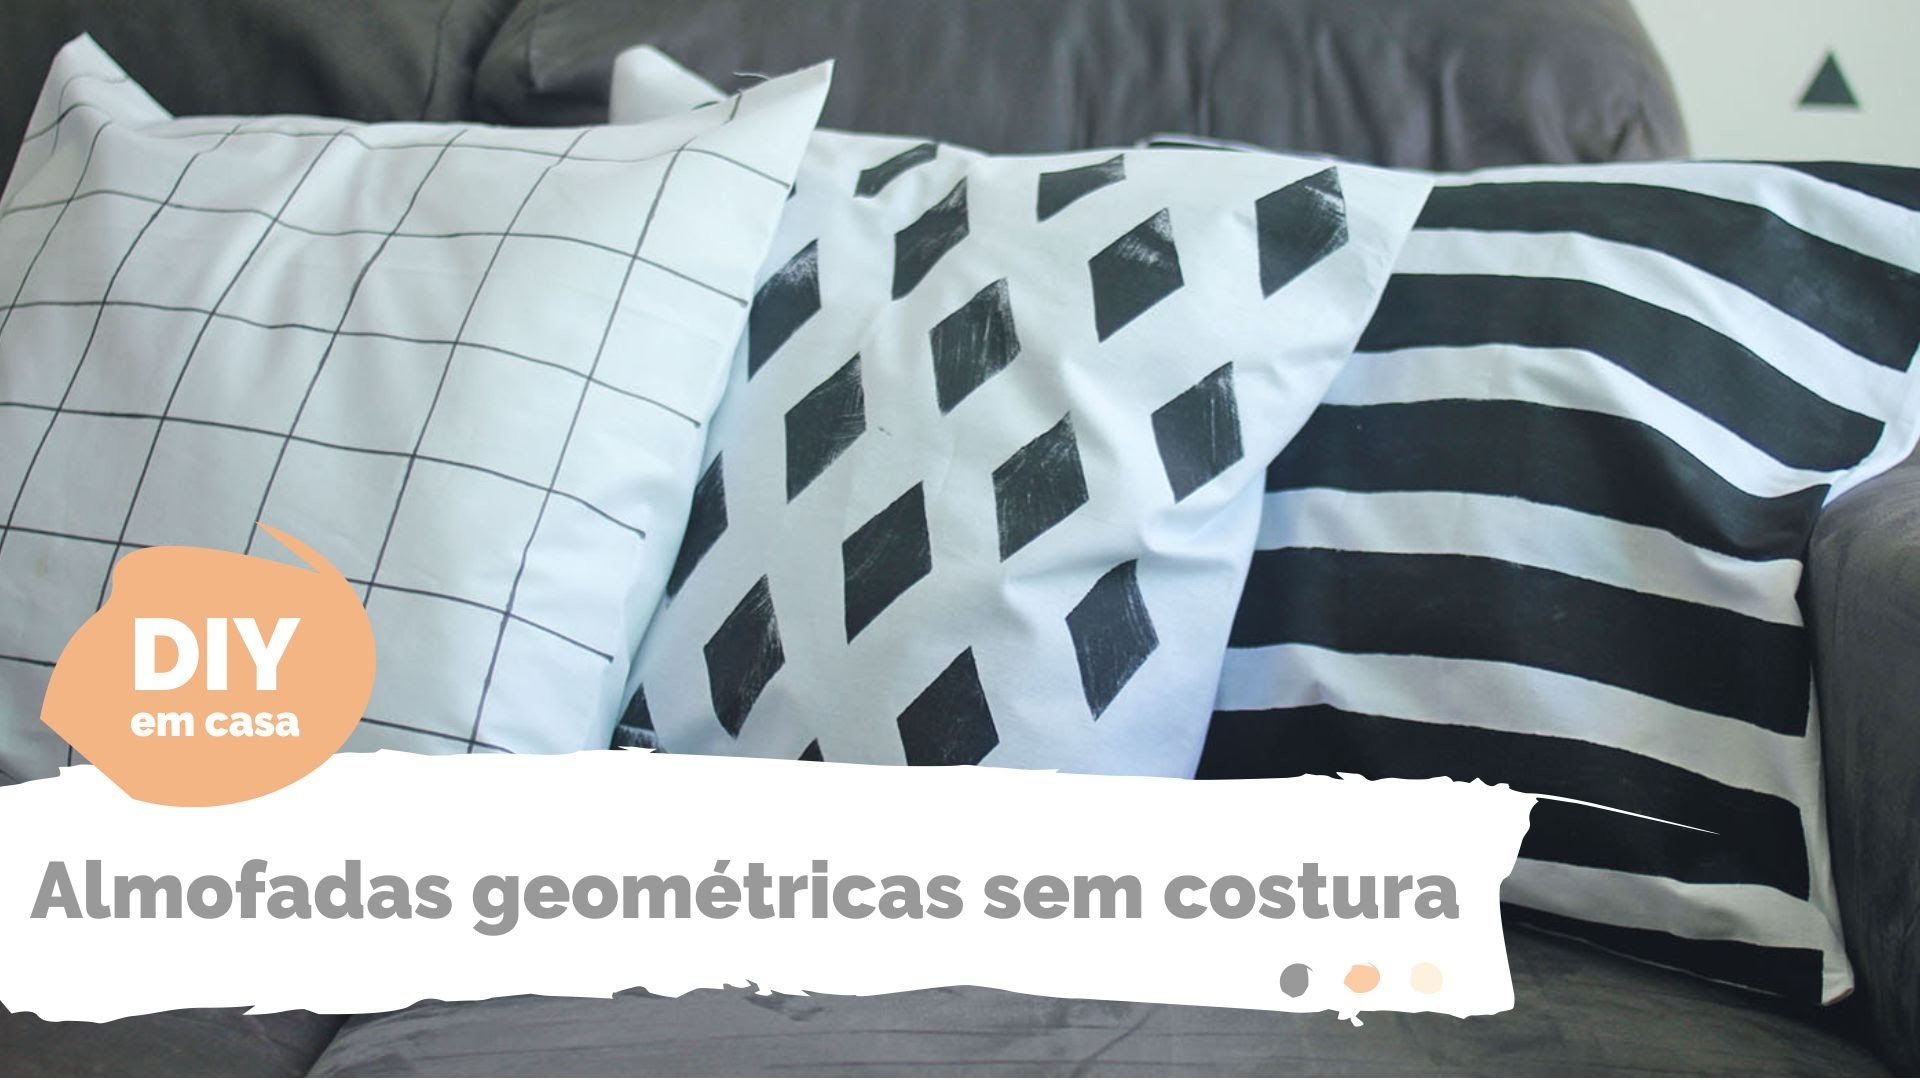 DIY EM CASA | Almofadas geométricas | Por GavetaMix